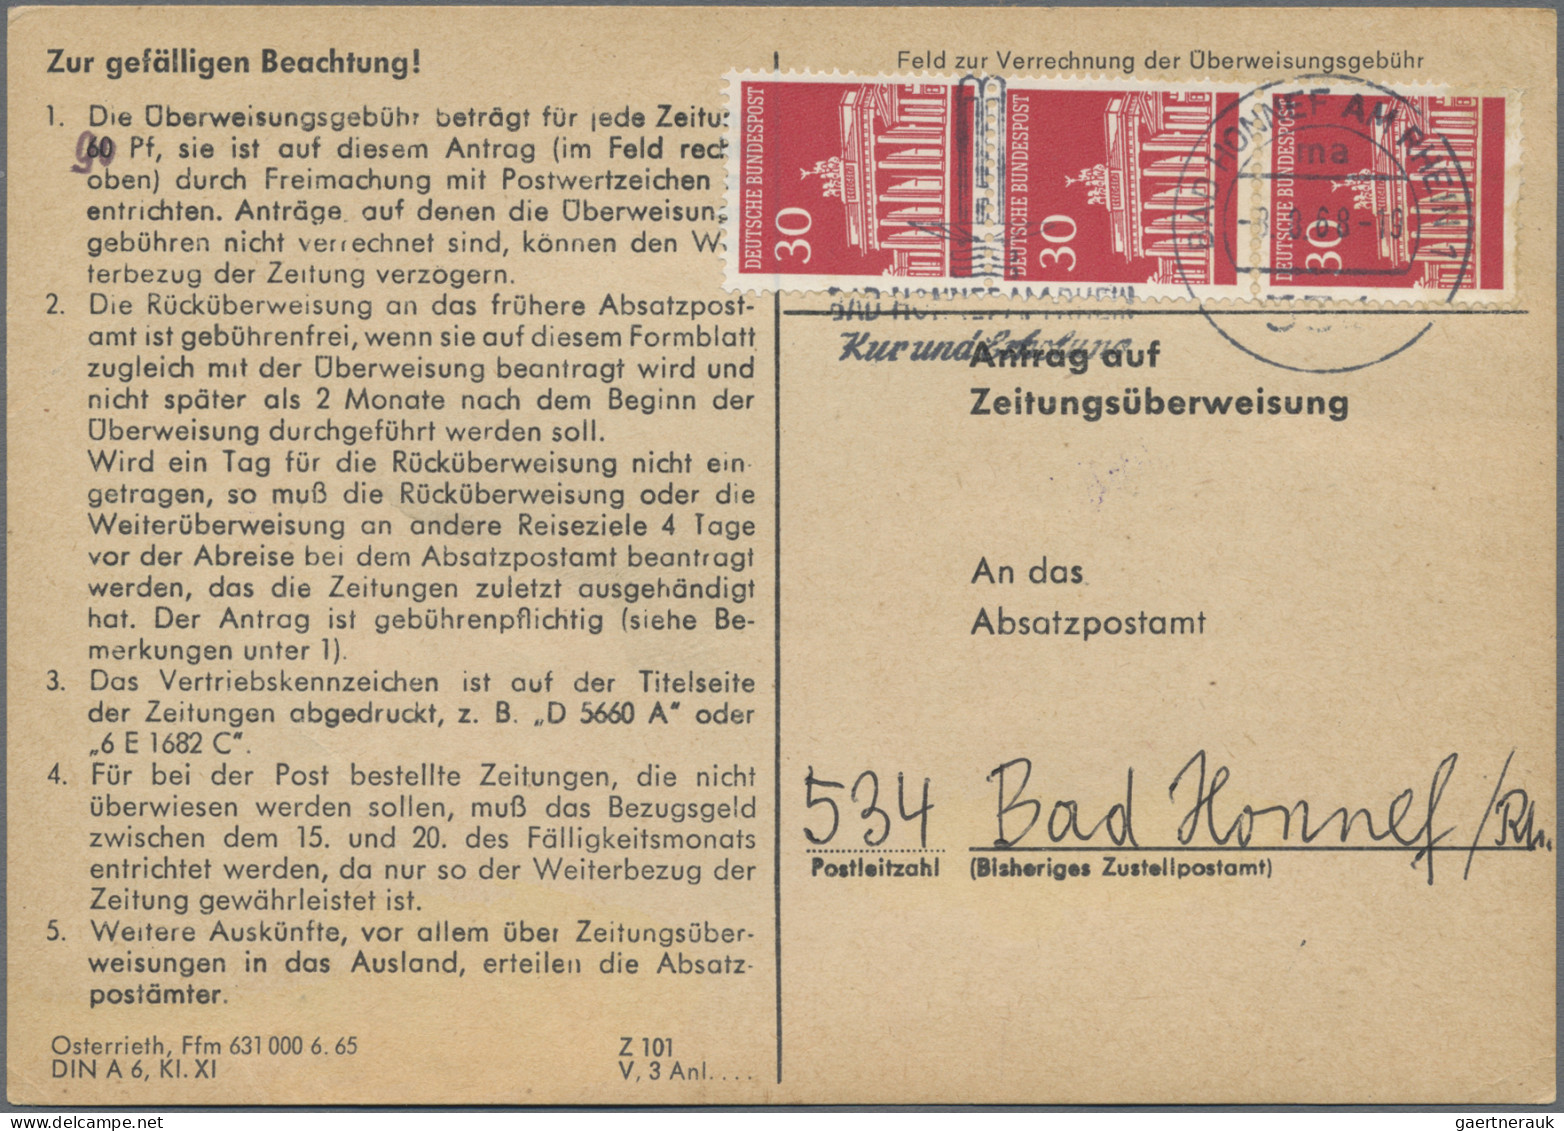 Bundesrepublik Deutschland: 1974/1978, Partie von ca. 82 Stück "Antrag auf Ansch